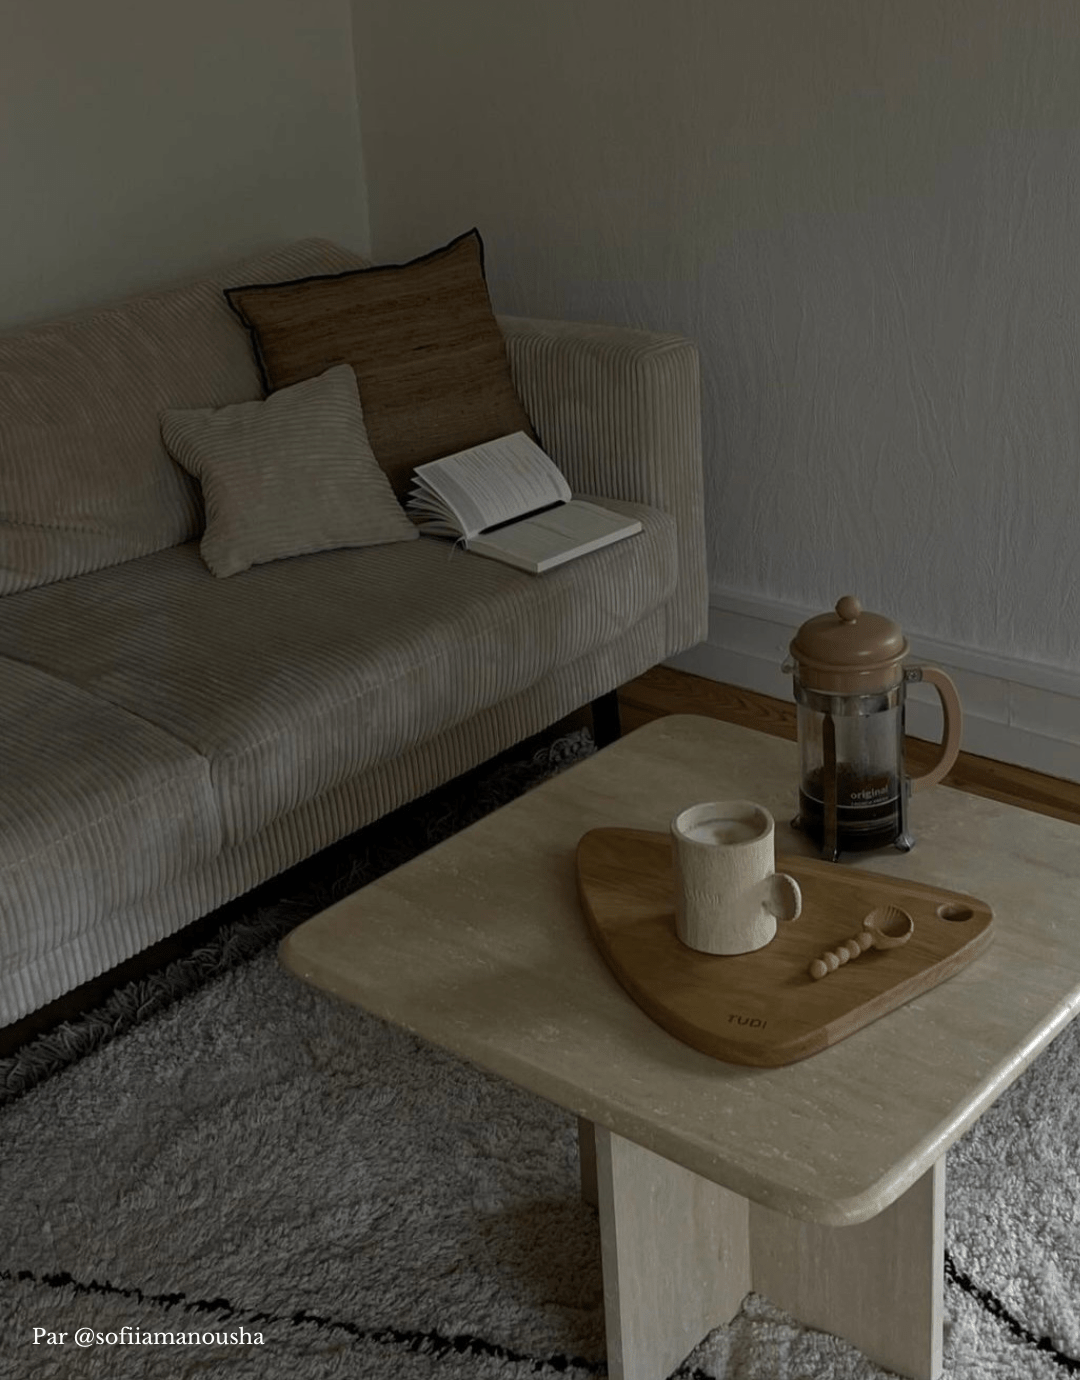 Carnet journaling - unile.selfcare carnet de journaling ouvert sur canapé beige dans un intérieur cosy et chaleureux.